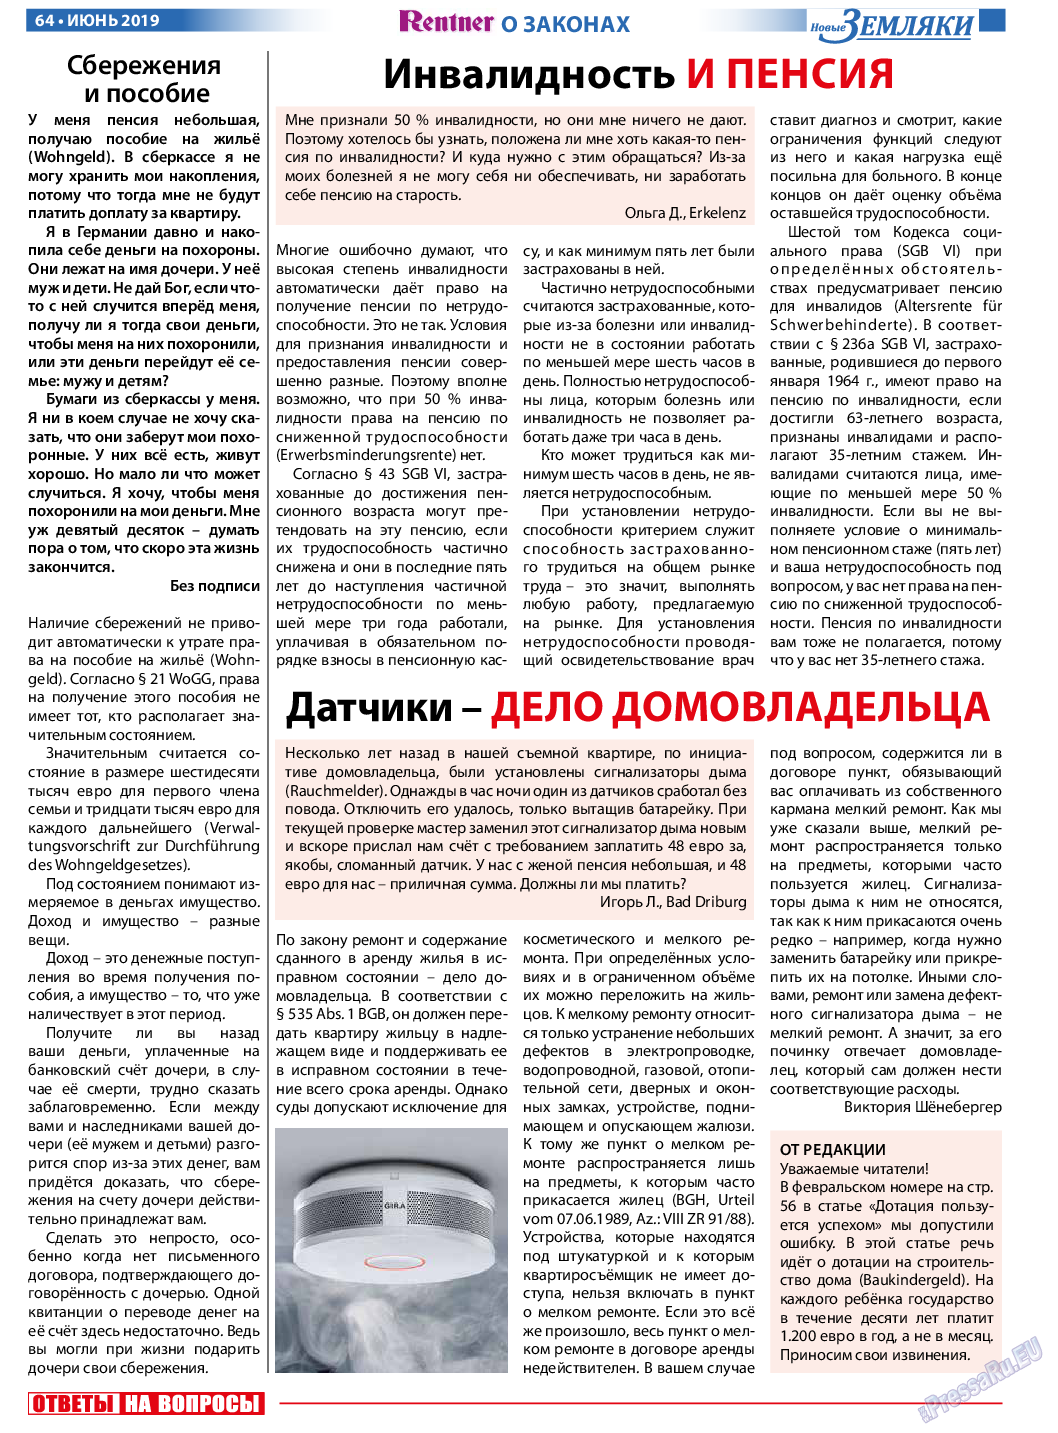 Новые Земляки, газета. 2019 №6 стр.64